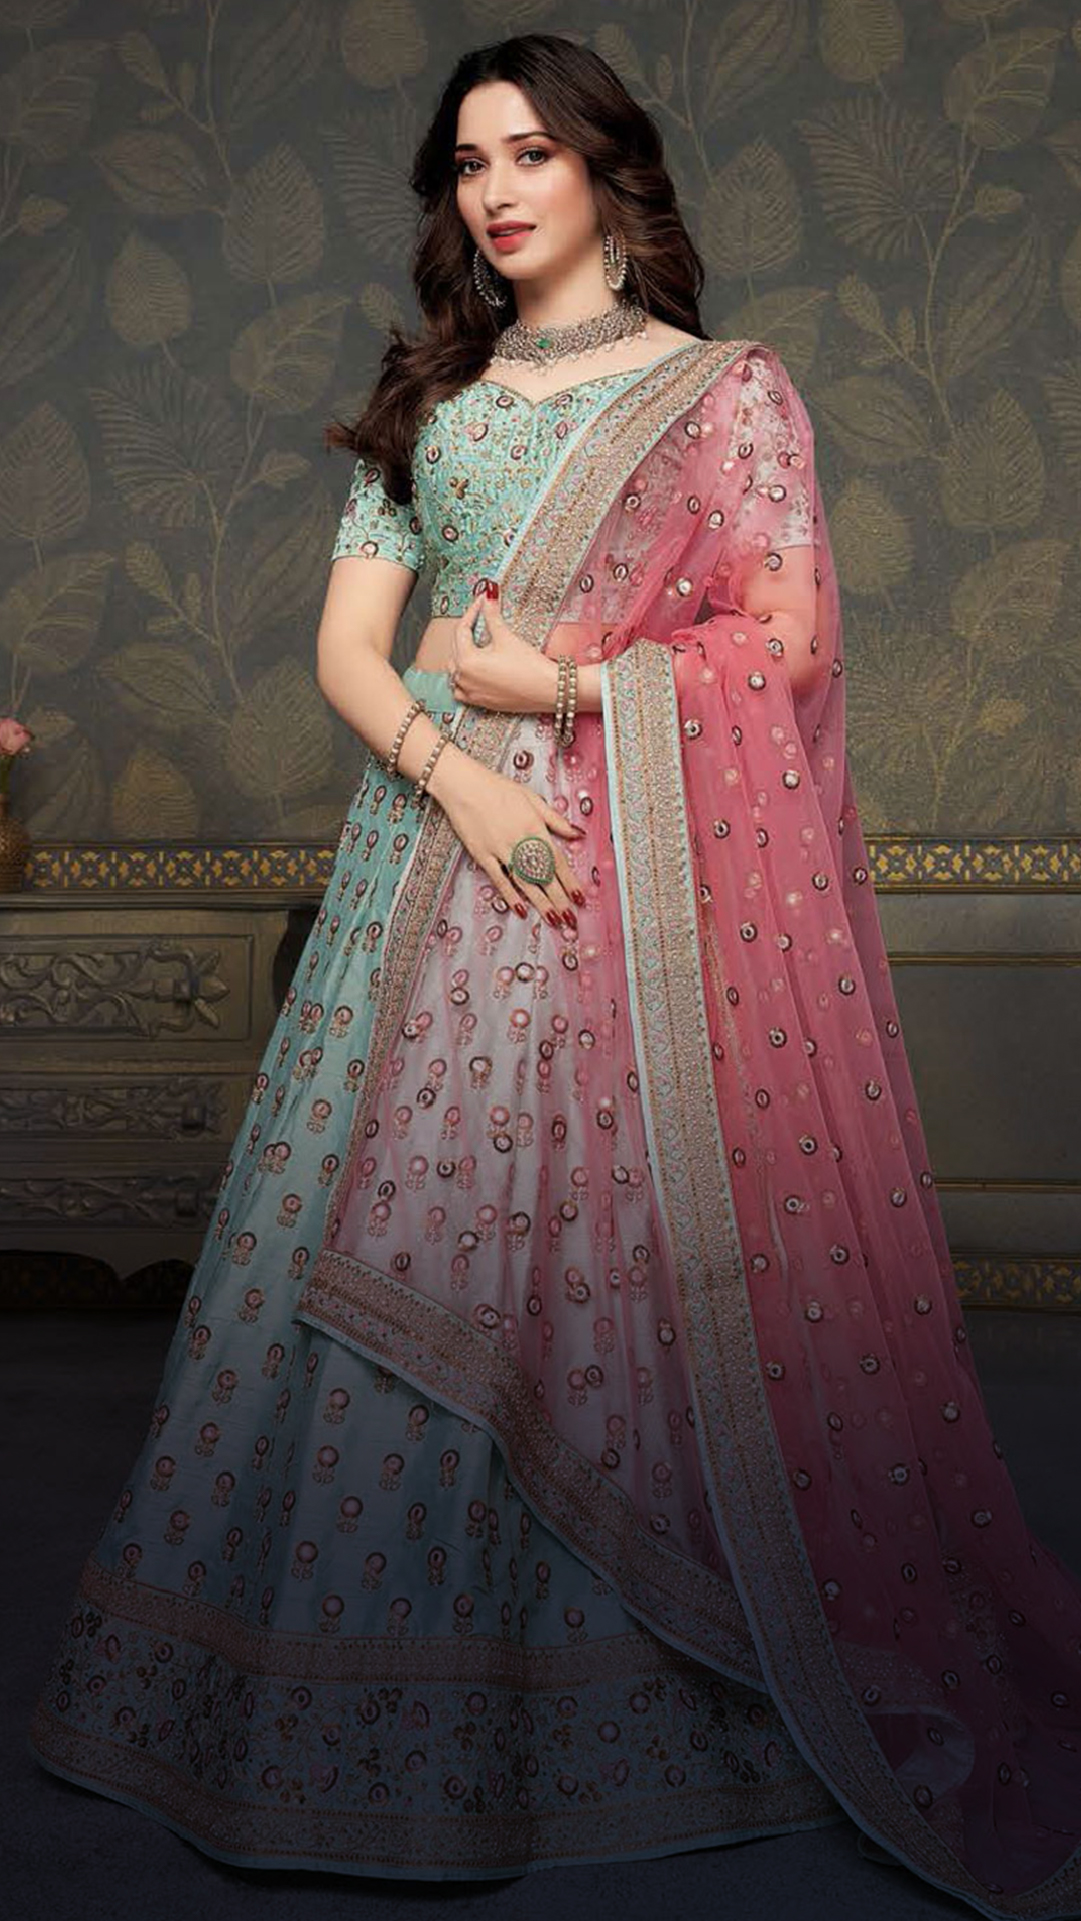 Sonam Kapoor Wedding Lehenga, Bridal Look, Outfits & Fashion Trends –  Sloshout Blog